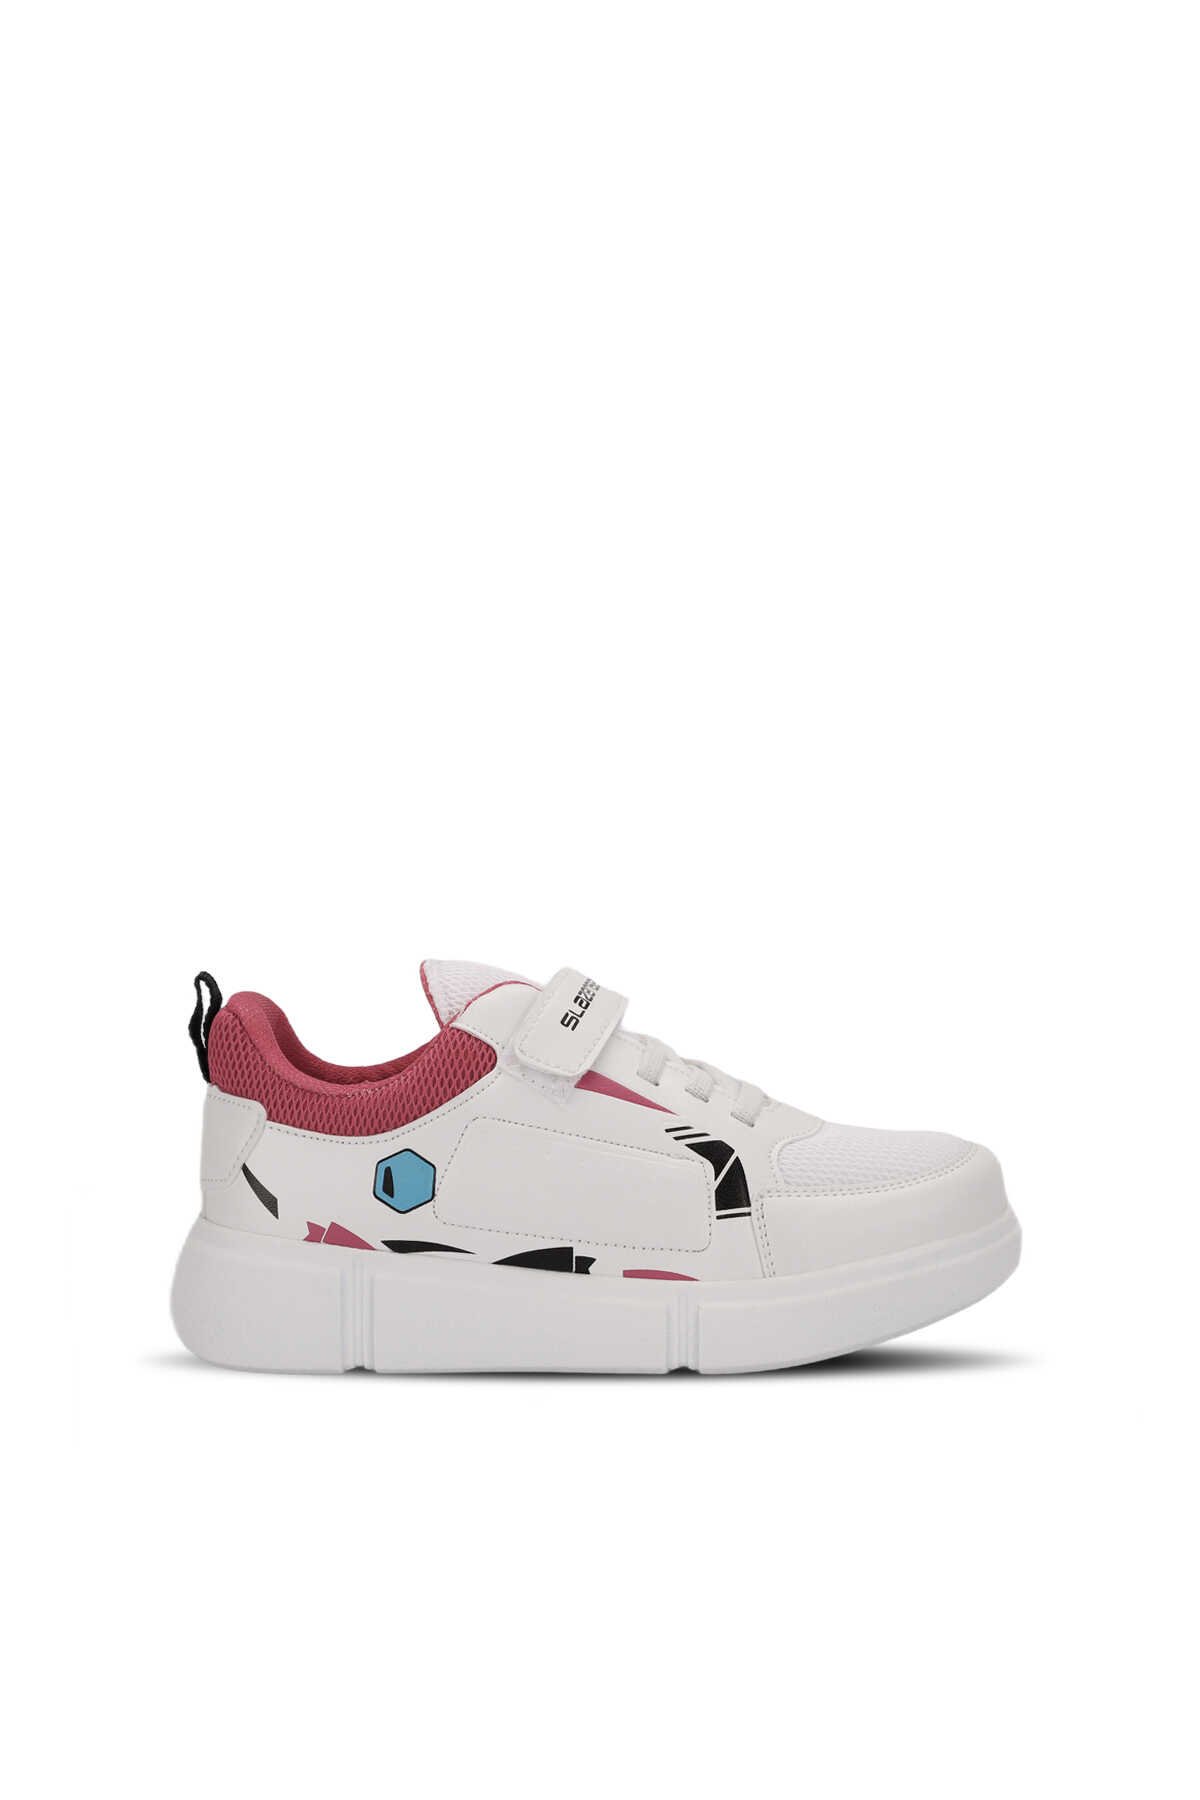 Slazenger - Slazenger KEPA Sneaker Kız Çocuk Ayakkabı Beyaz / Fuşya